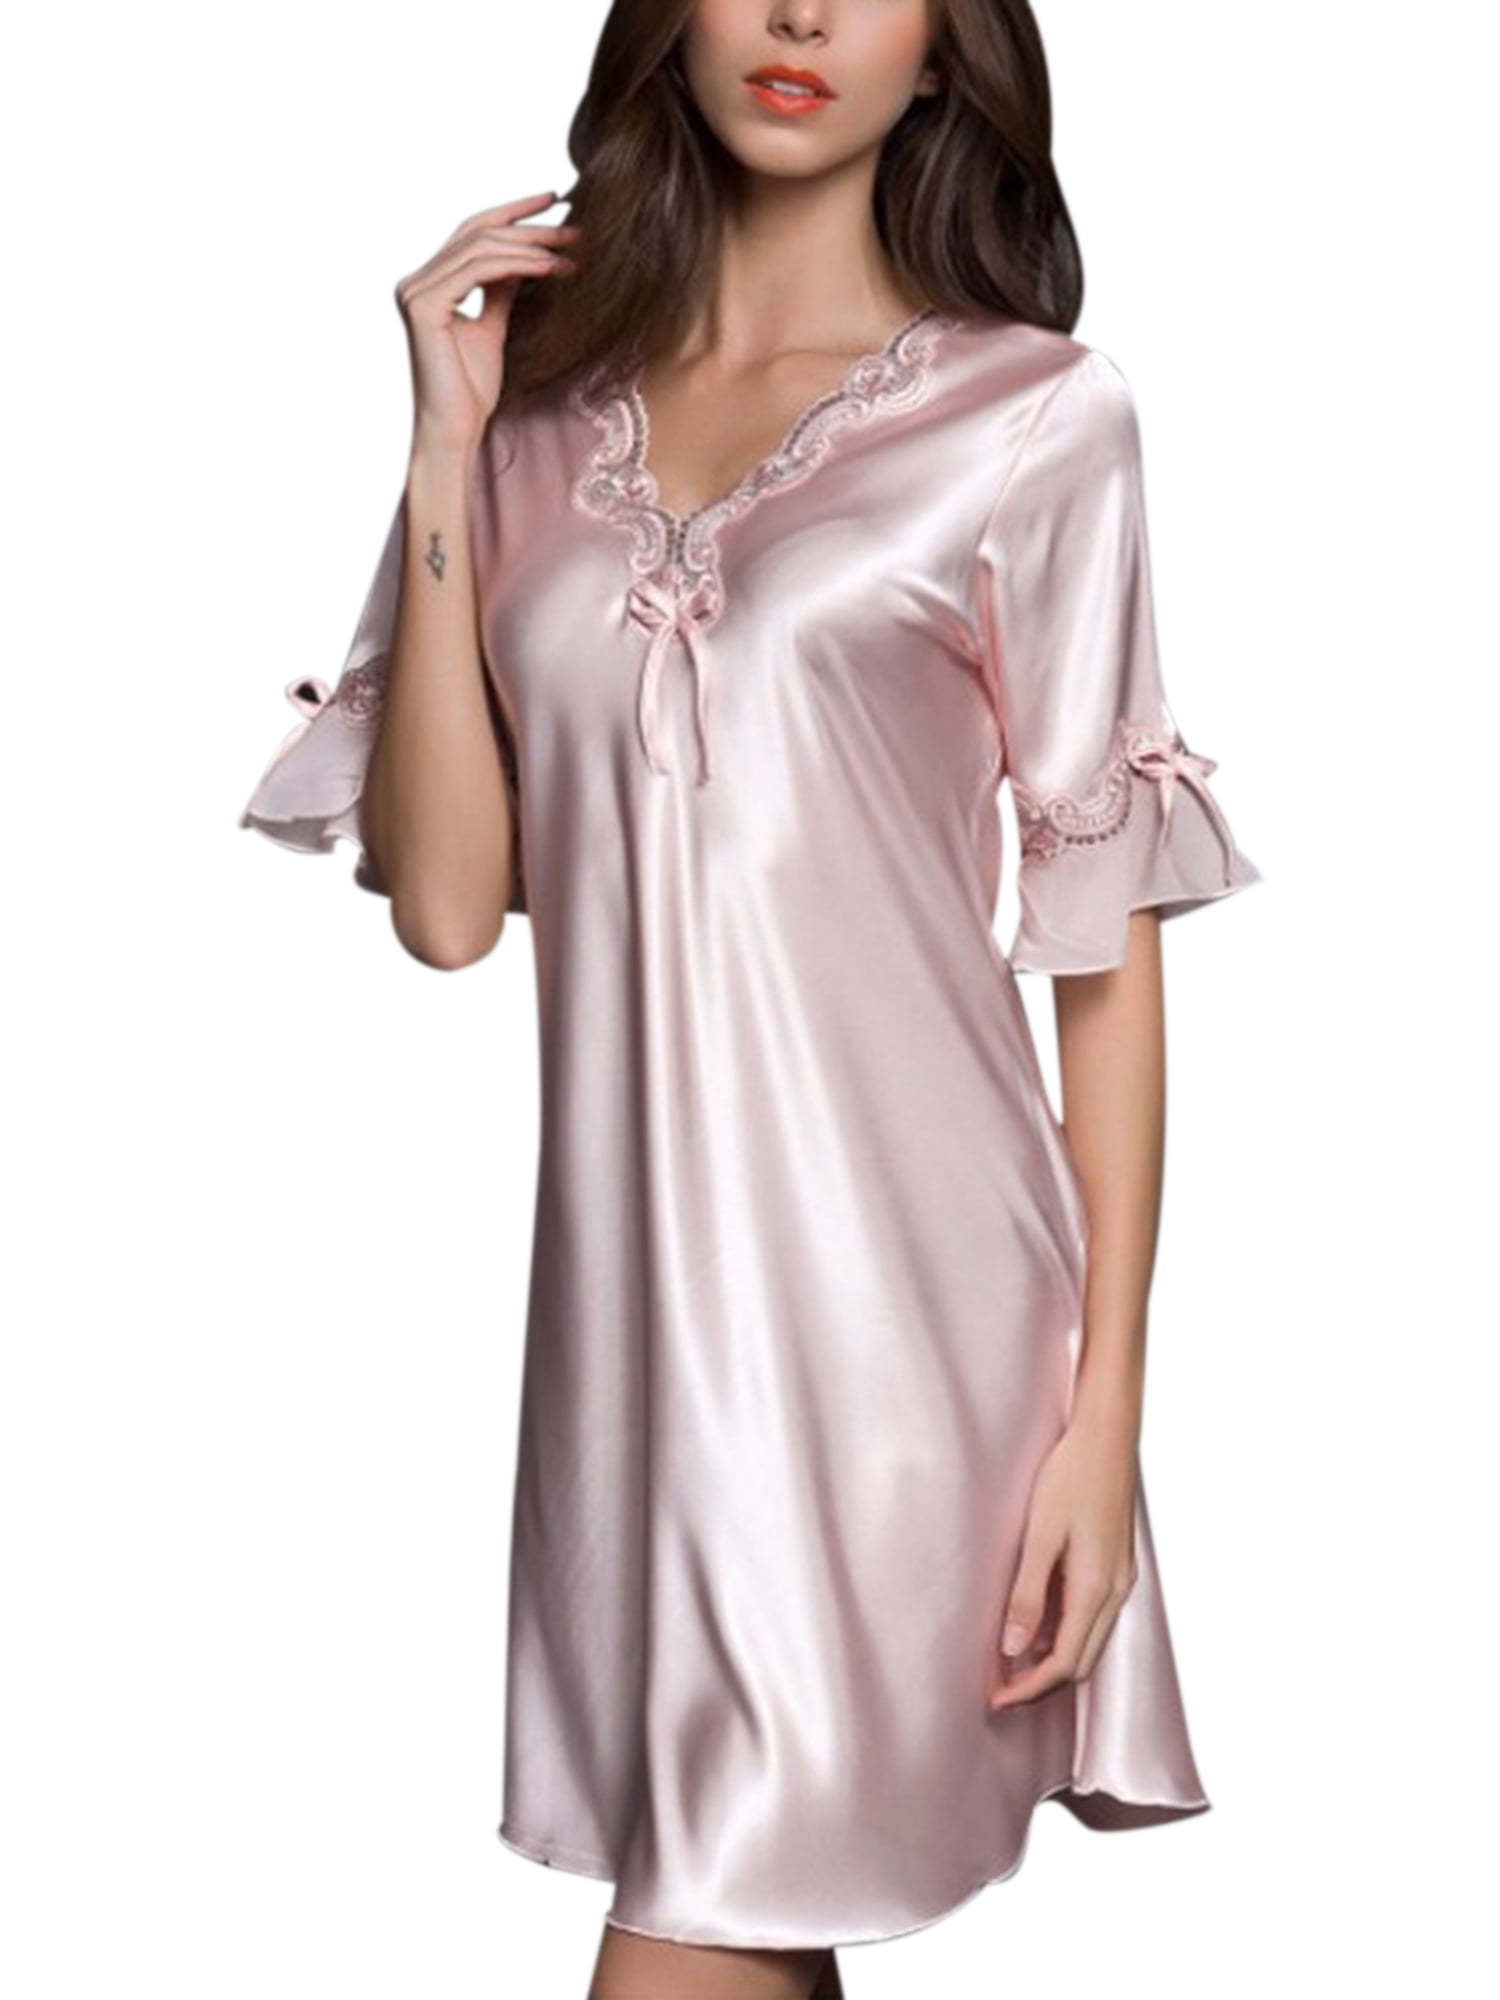 Adult Men Lace Nightwear Hot Baby Doll Dress Waist Belt Short Satin Sleepwear 